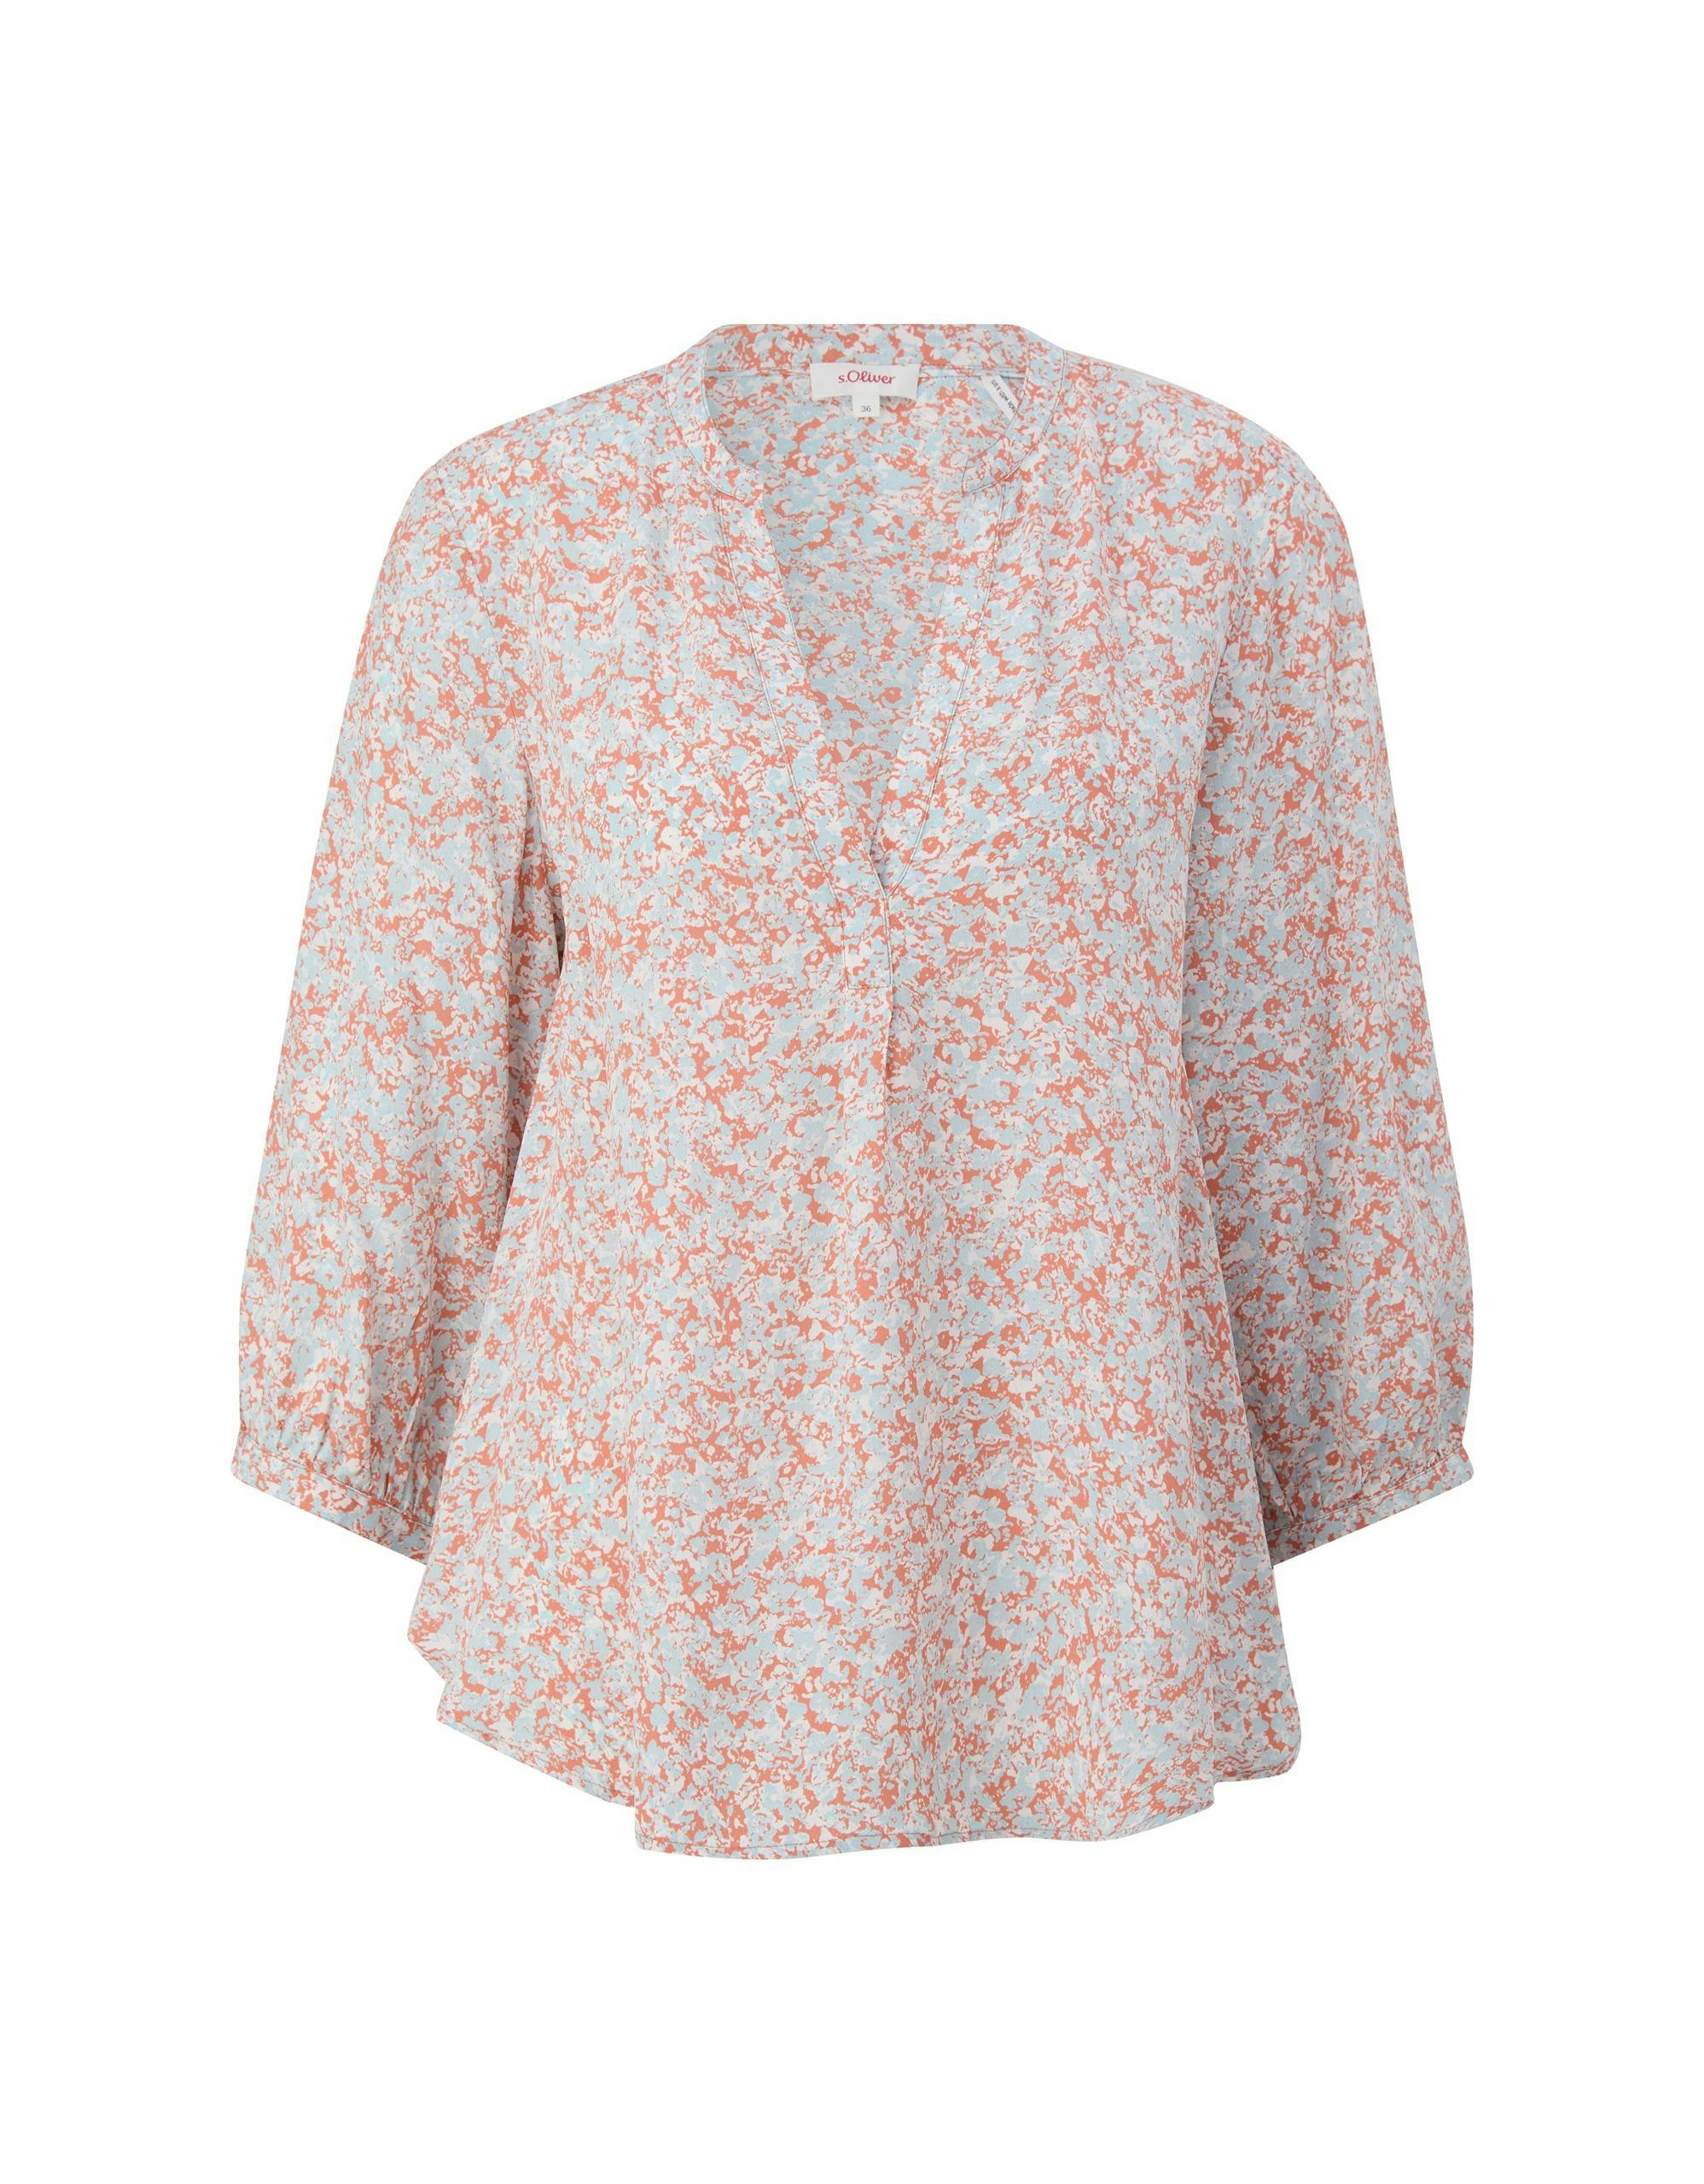 Tunika-Bluse aus Viskose | ADLER Mode s.Oliver | Onlineshop